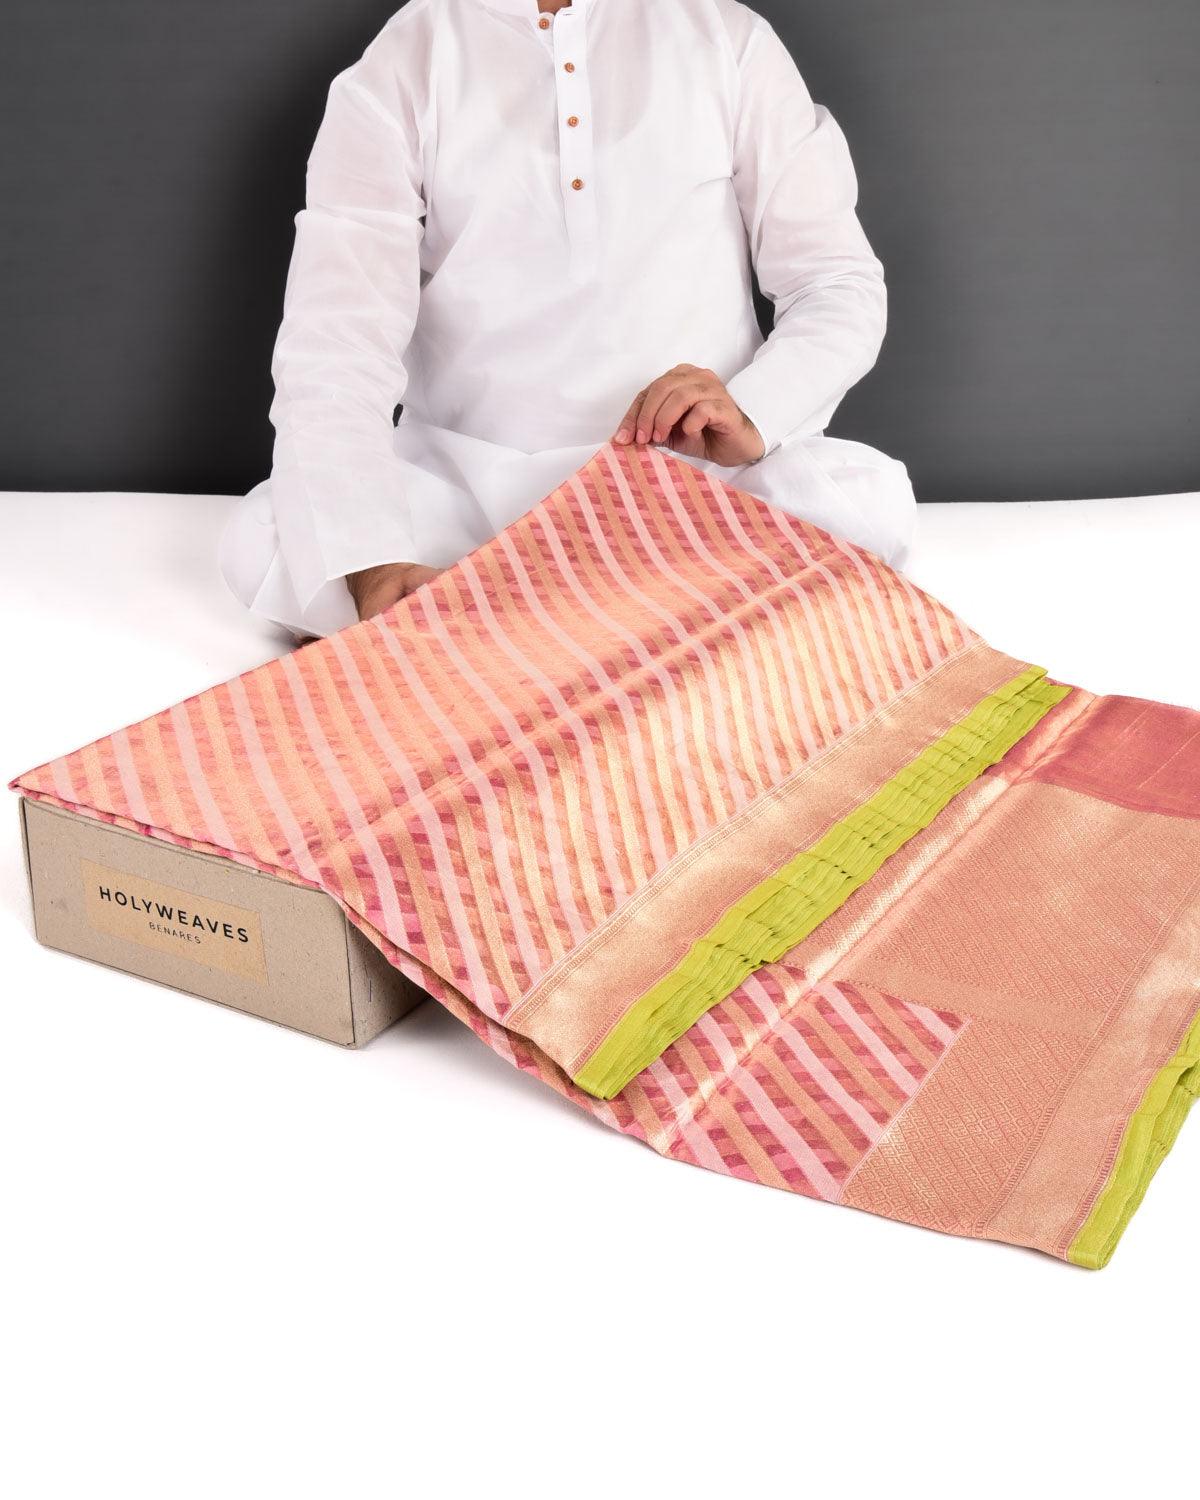 Metallic Pink Banarasi Resham & Gold Zari Diagonal Stripes Cutwork Brocade Handwoven Kora Tissue Saree - By HolyWeaves, Benares